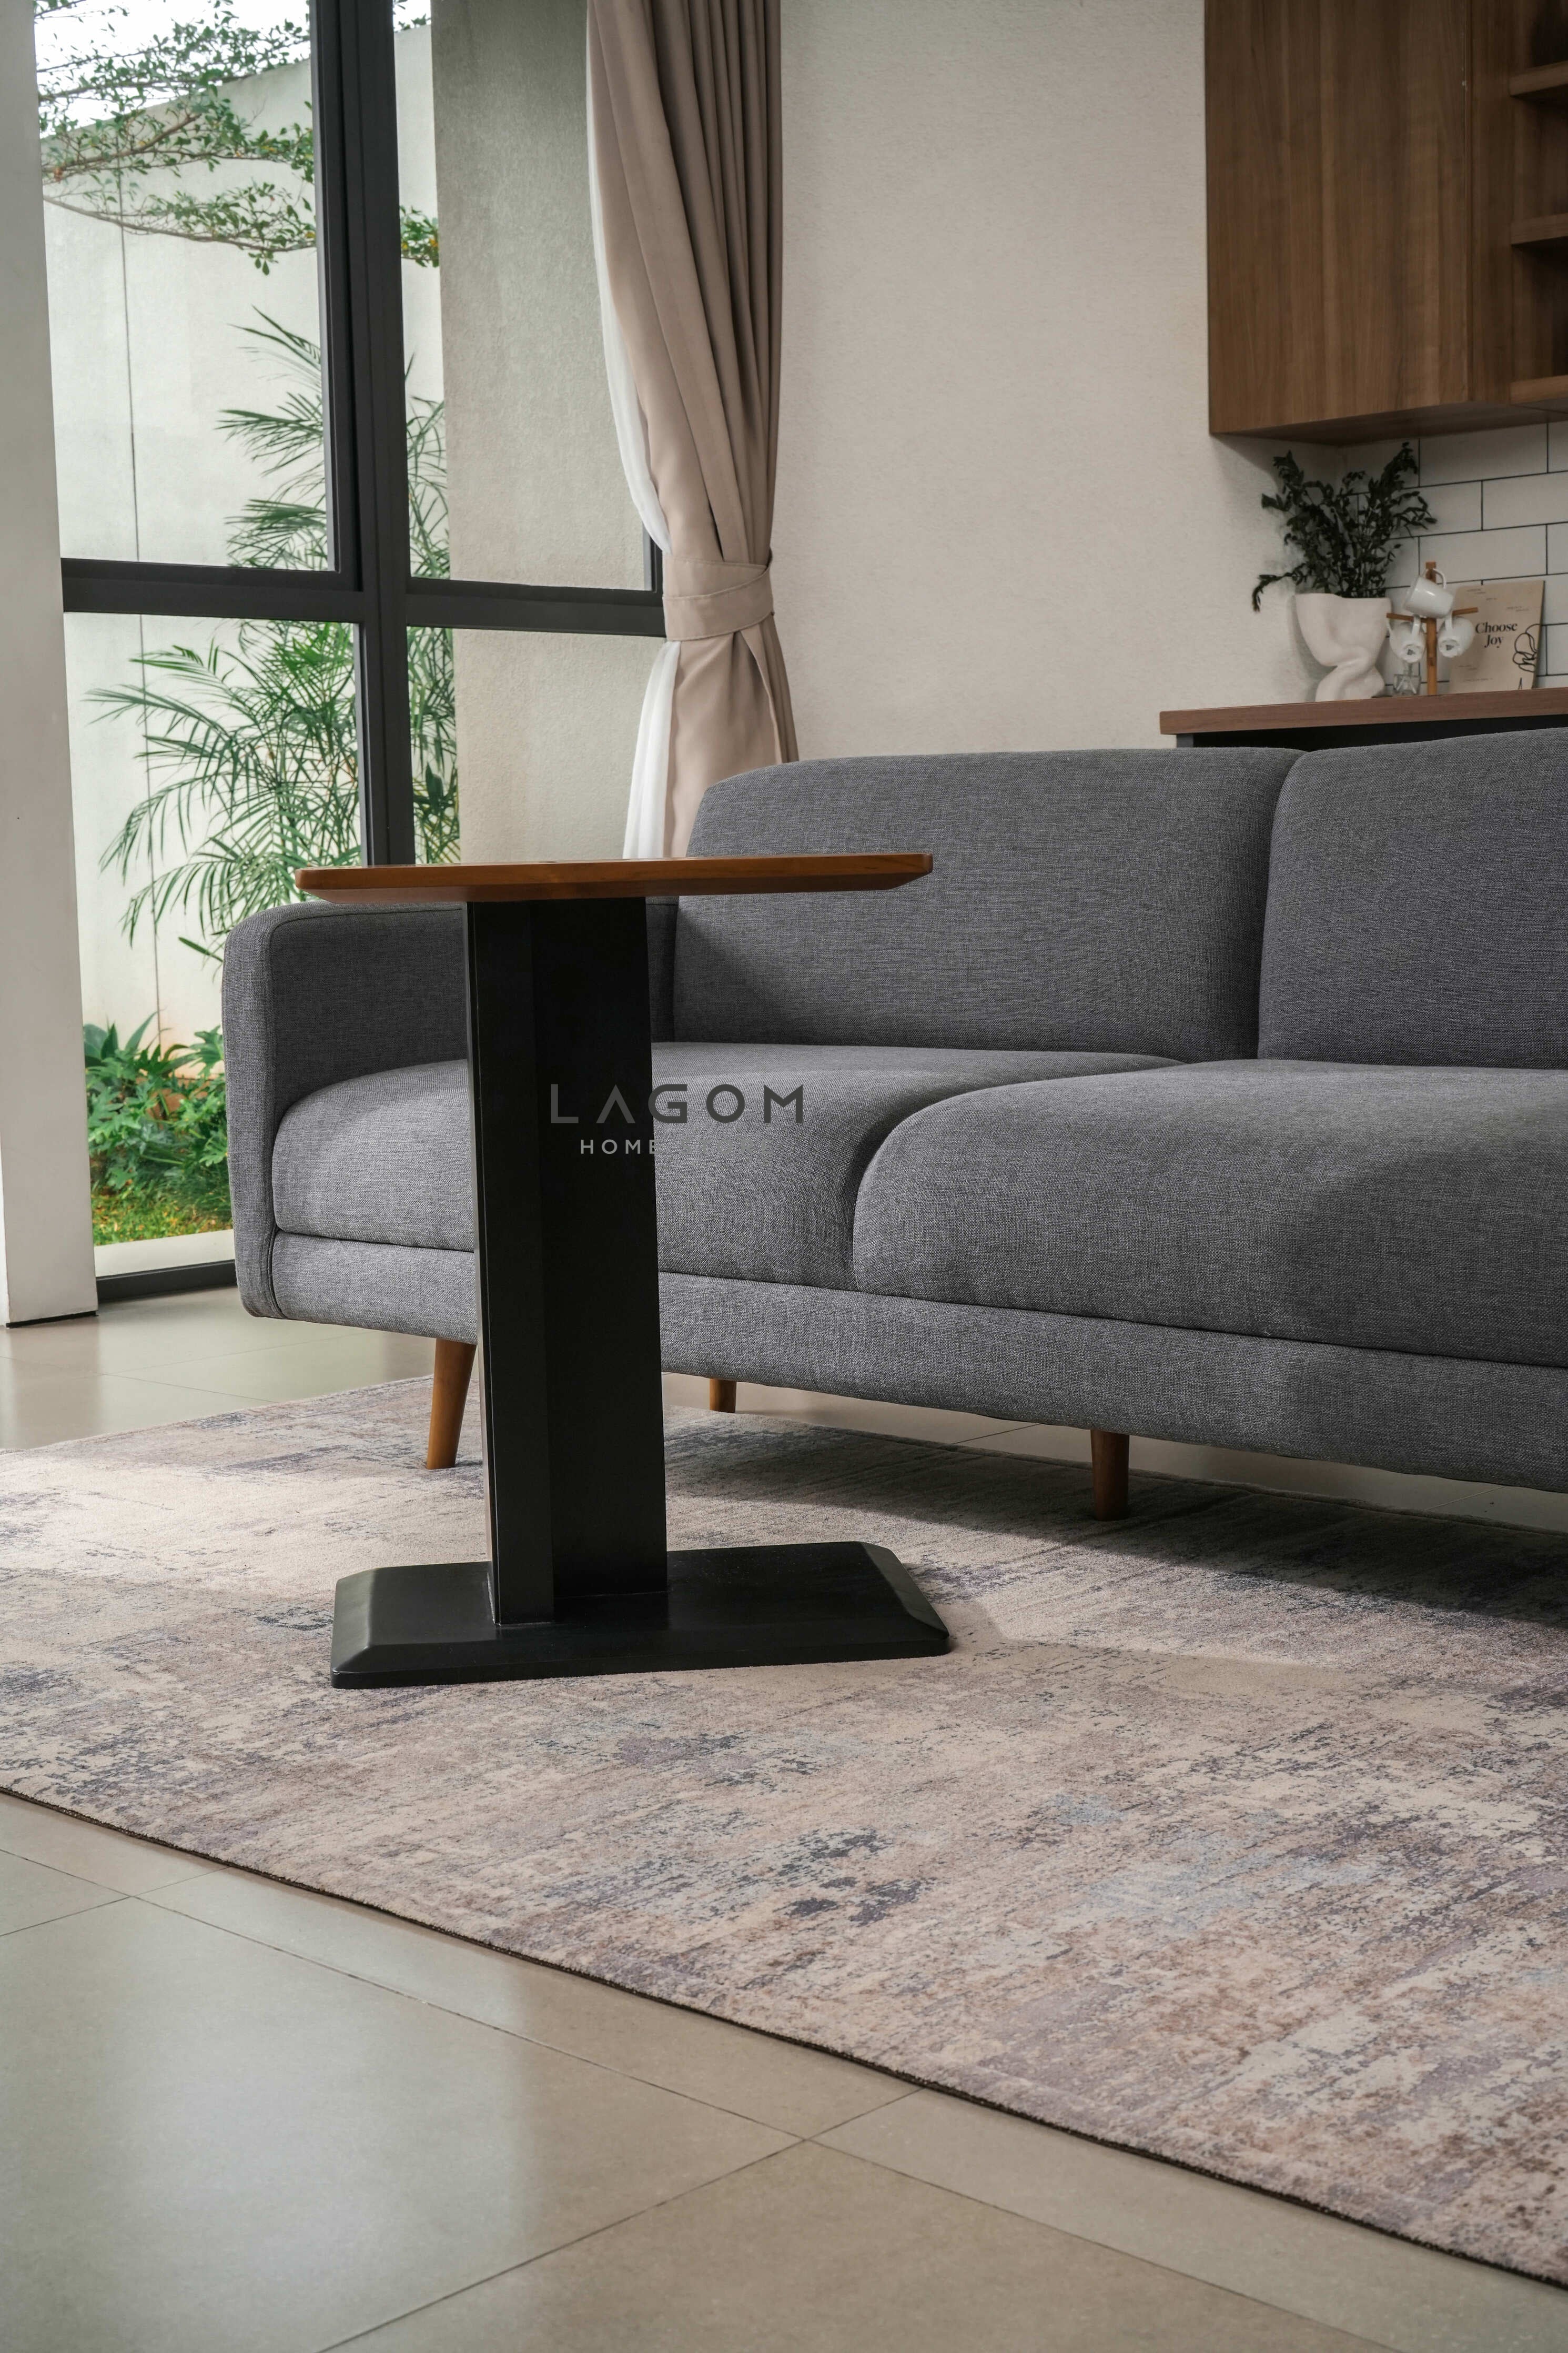 Meja Samping dengan Slot HP dan iPad dari Kayu Jati Side Table Lagom Home Store Jati Furnitur Teak Furniture Jakarta